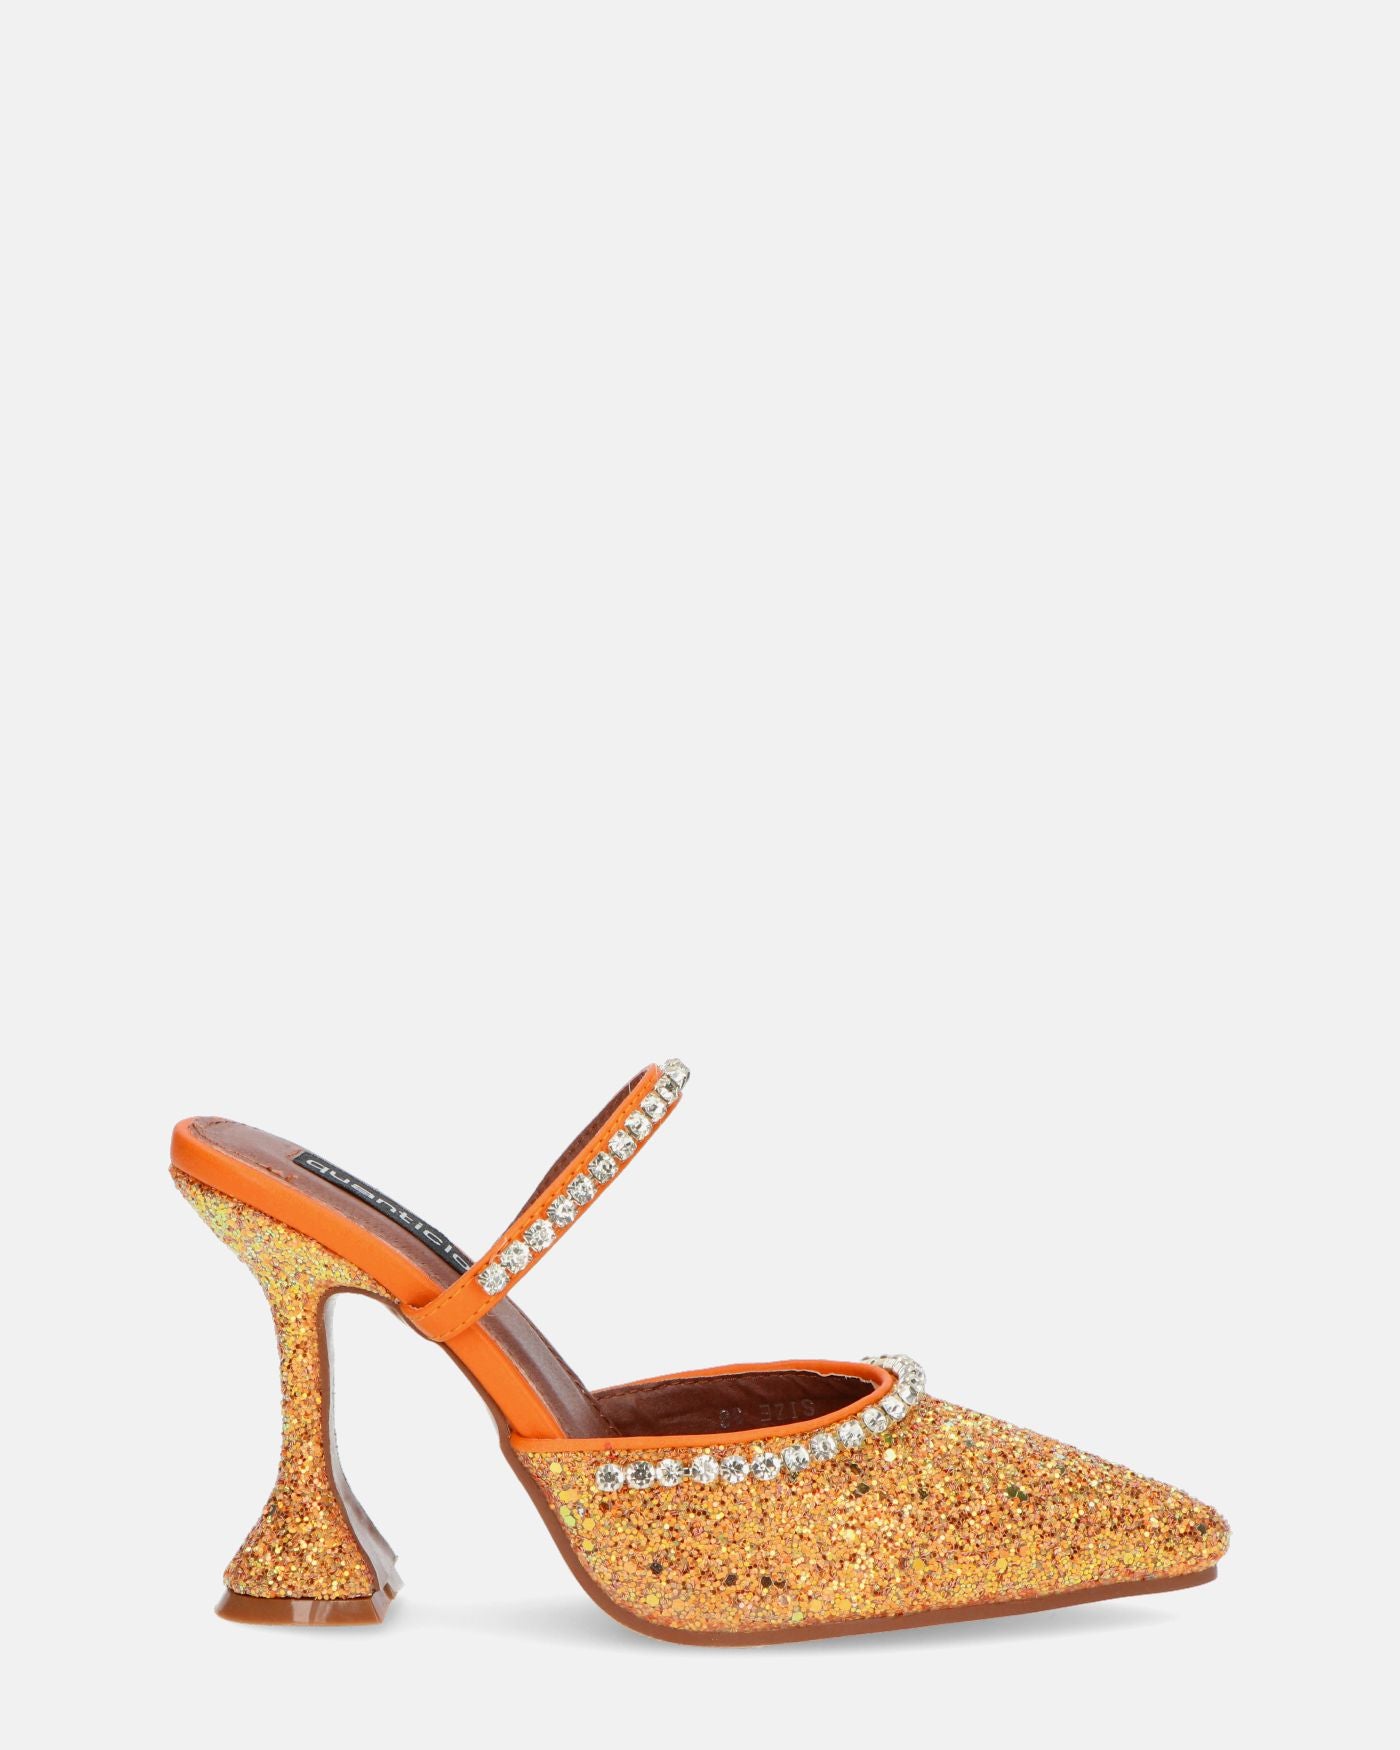 PERAL - chaussure à talon en glitter orange avec pierres précieuses